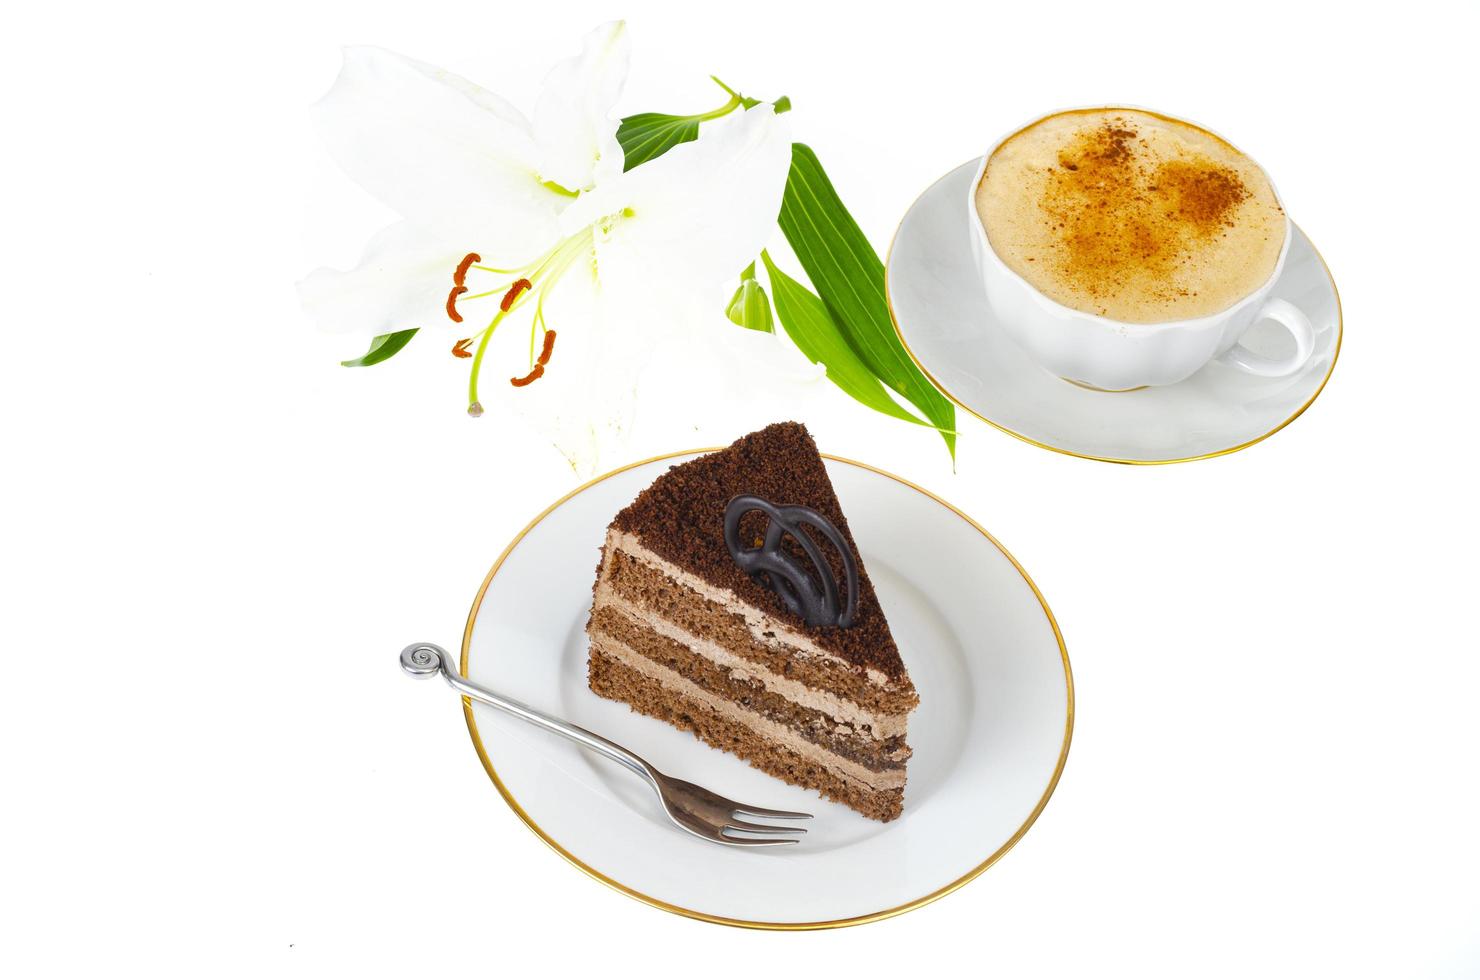 prato com porção de delicioso bolo caseiro decorado com chocolate no fundo branco. foto de estúdio